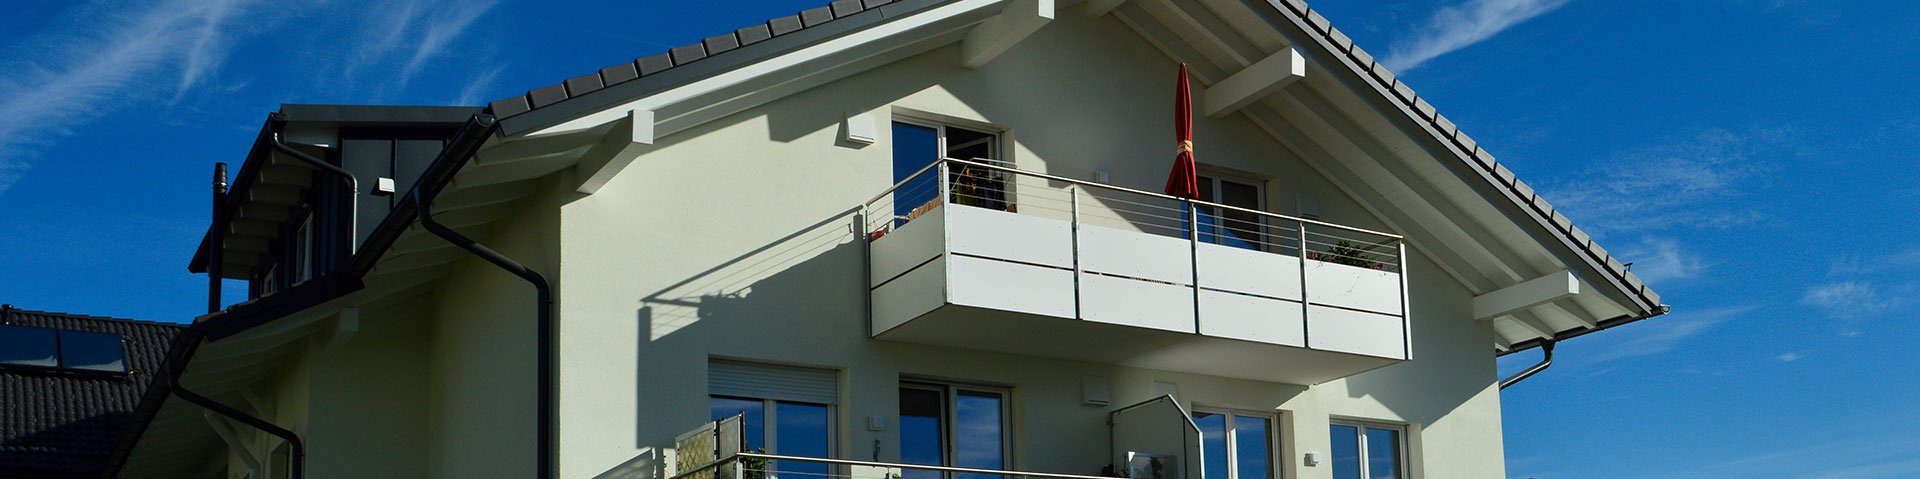 Balkon des betreuten Wohnens von Blaichach